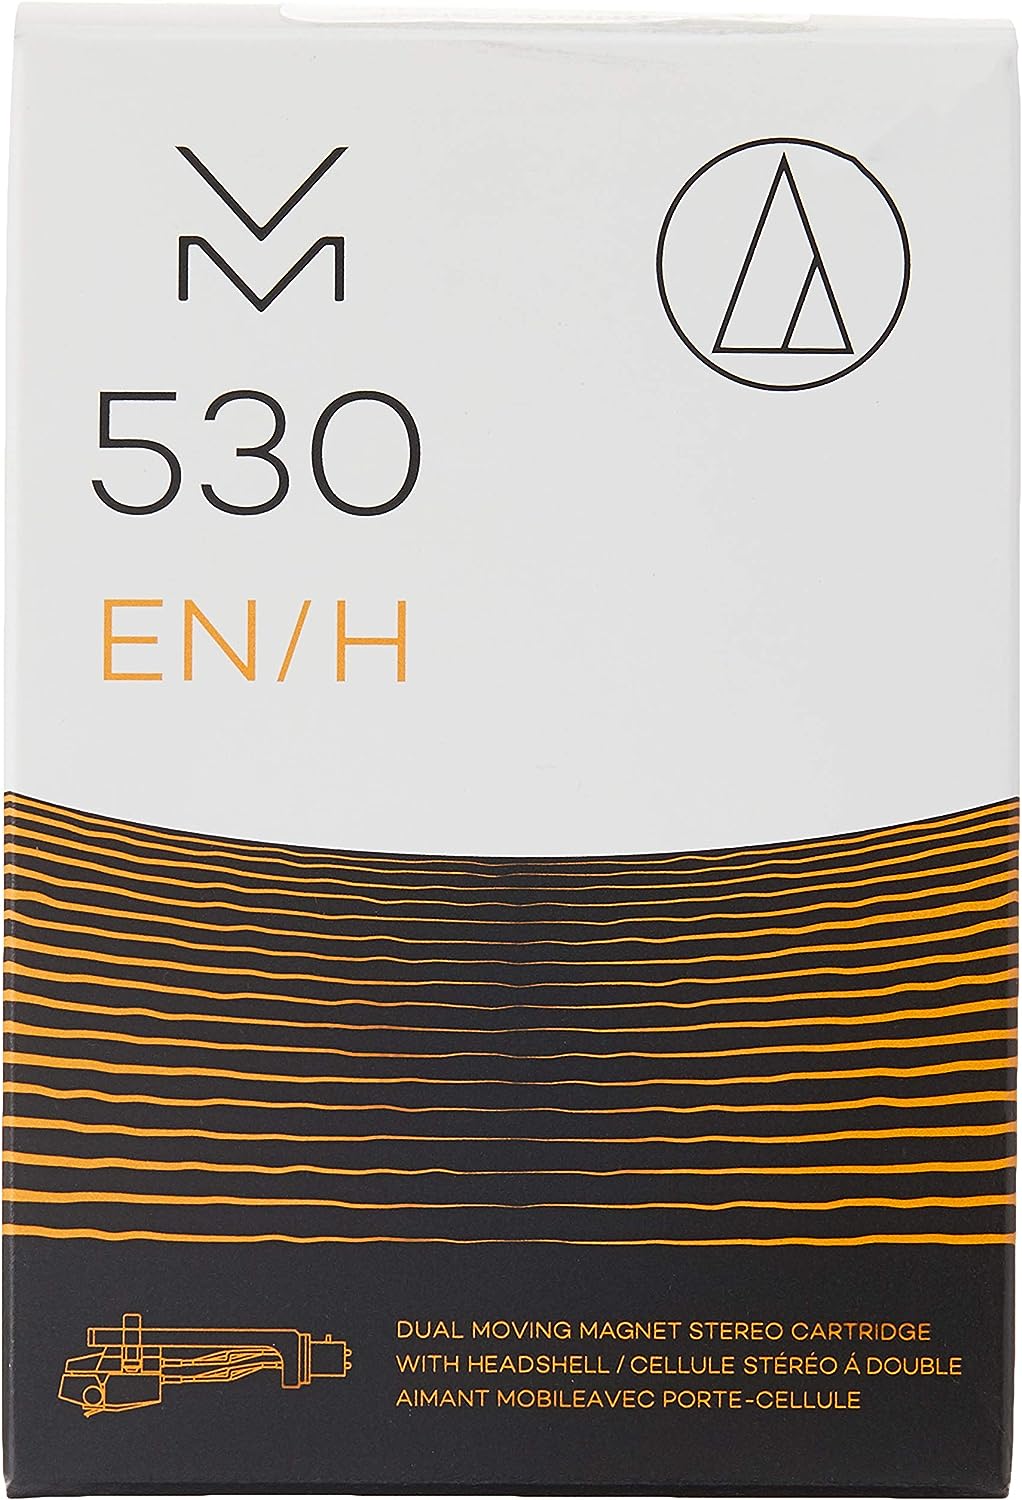 VM530ENH-Cartridge & Headshell-Audio-Technica-PremiumHIFI